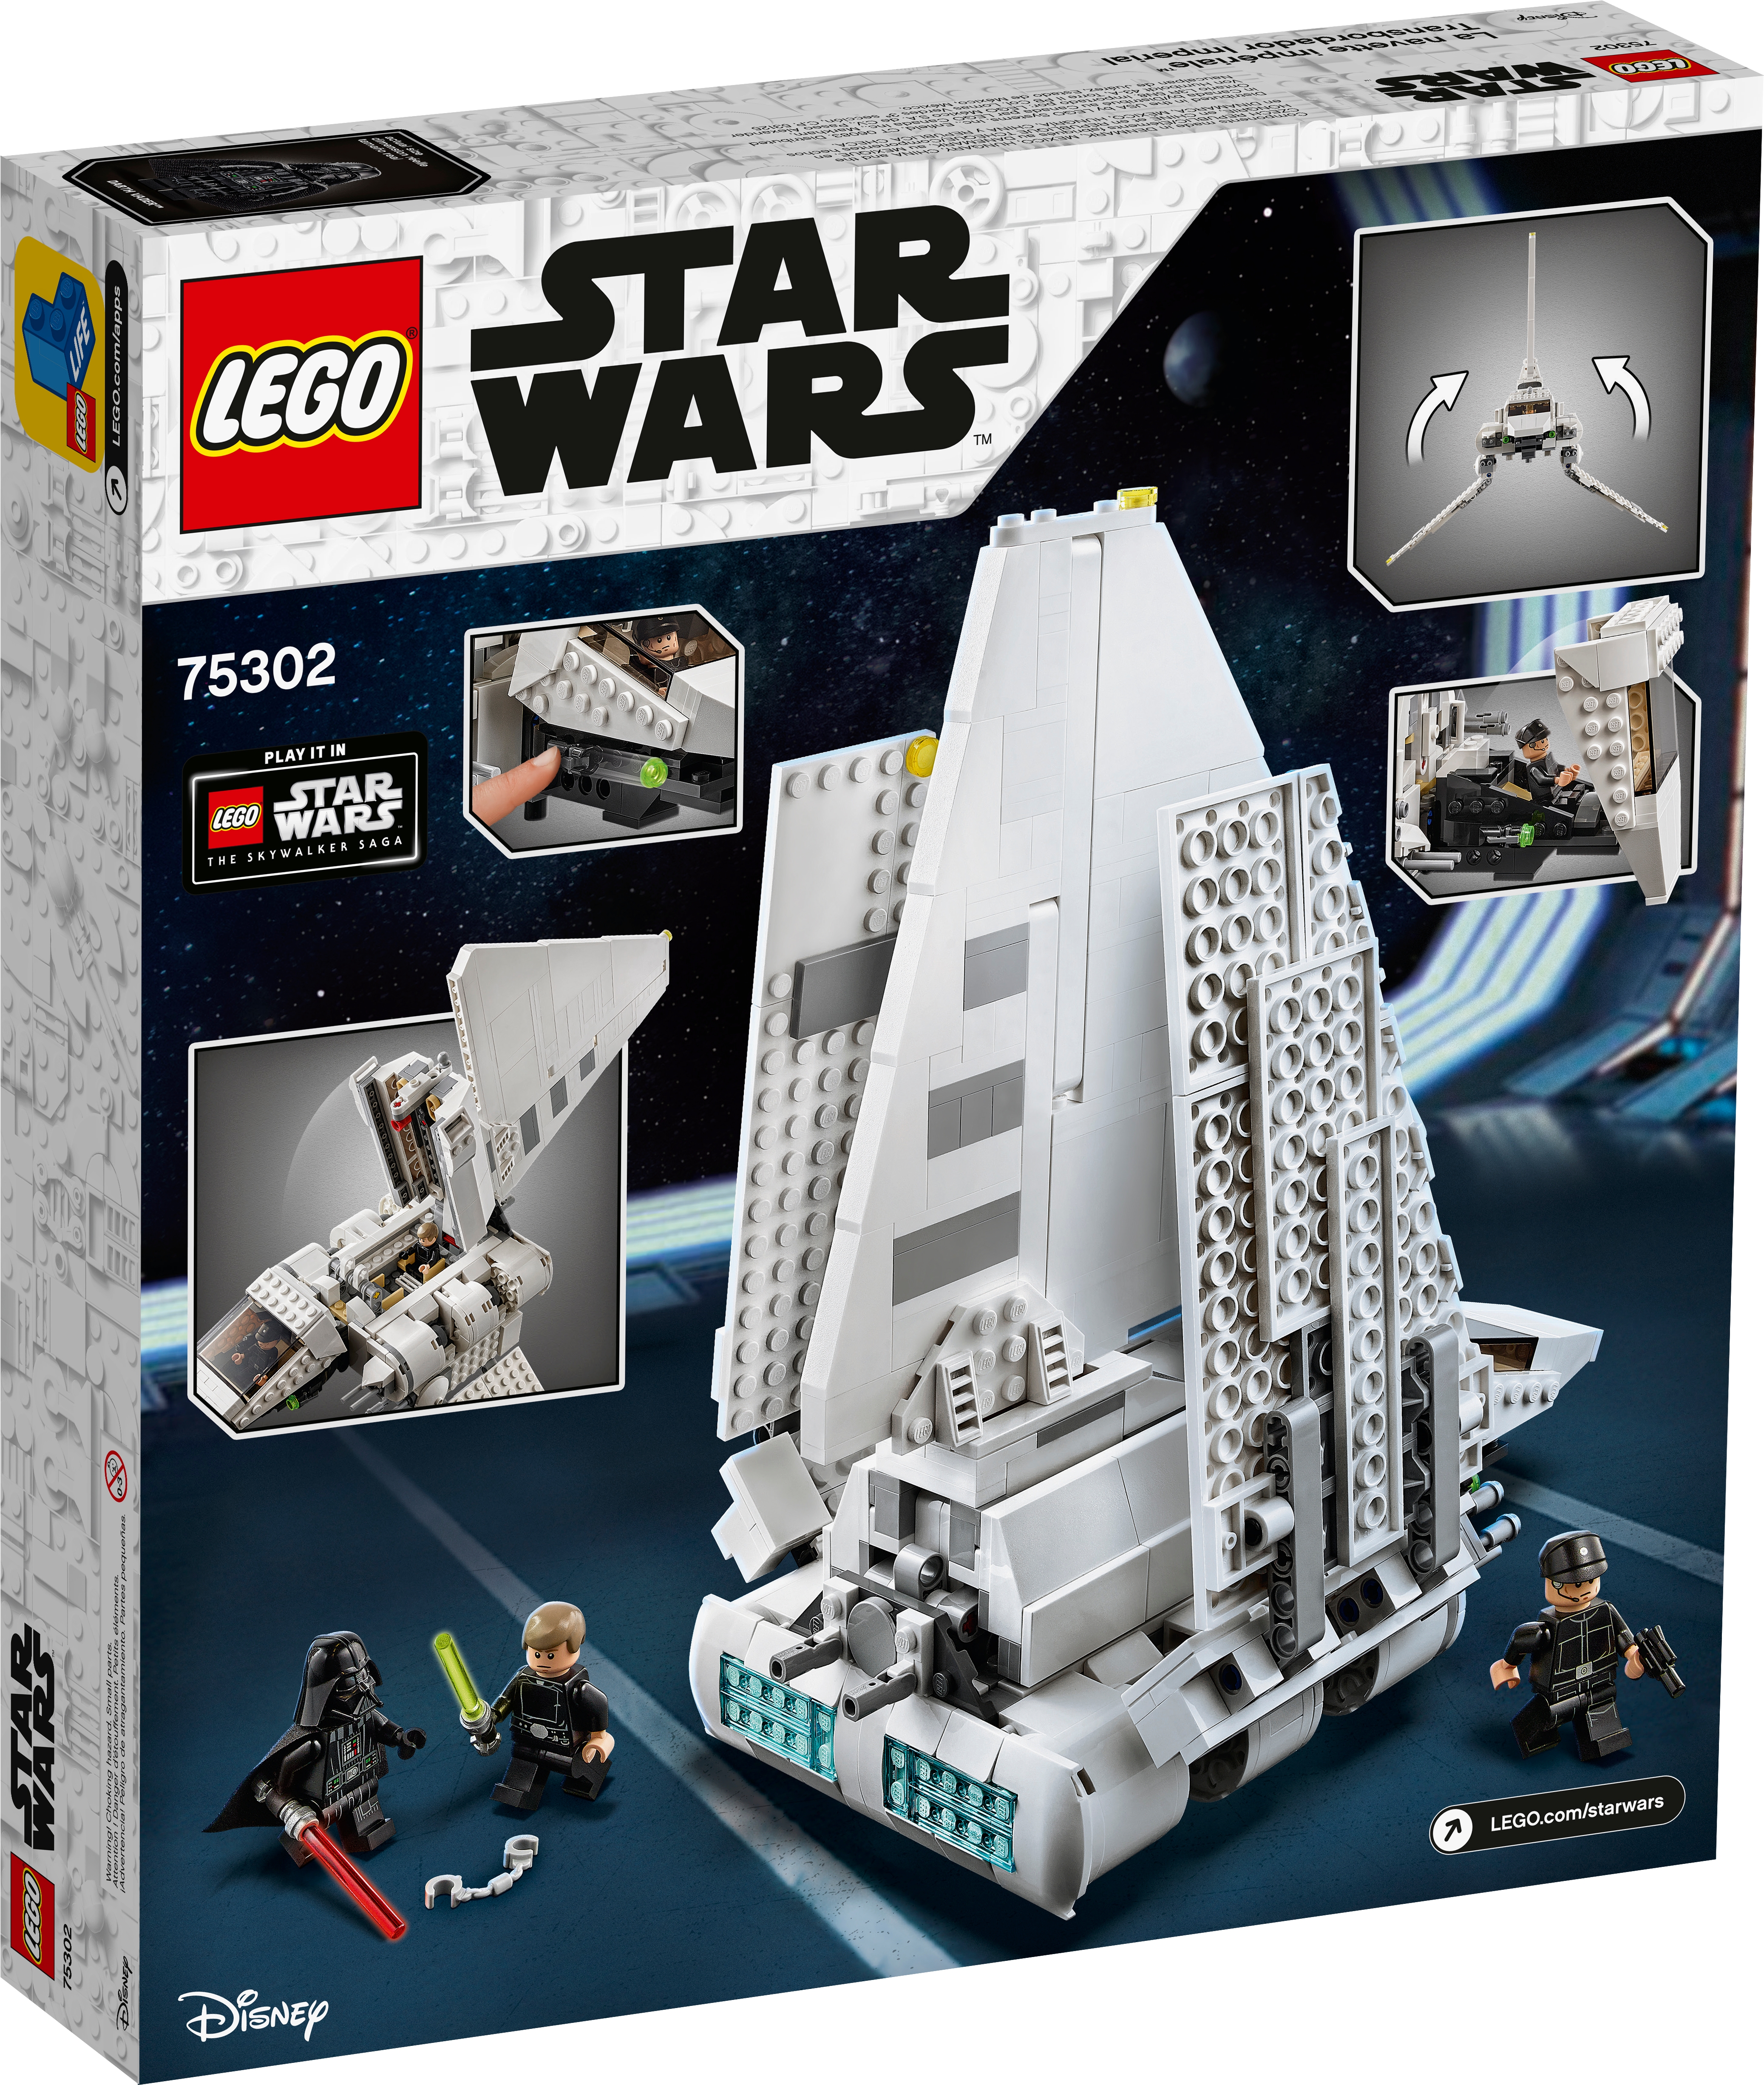 LEGO 75302 Star Wars La Navette impériale Jeu de Construction Minifigurines de Luke Skywalker avec Son Sabre Laser et Dark Vador